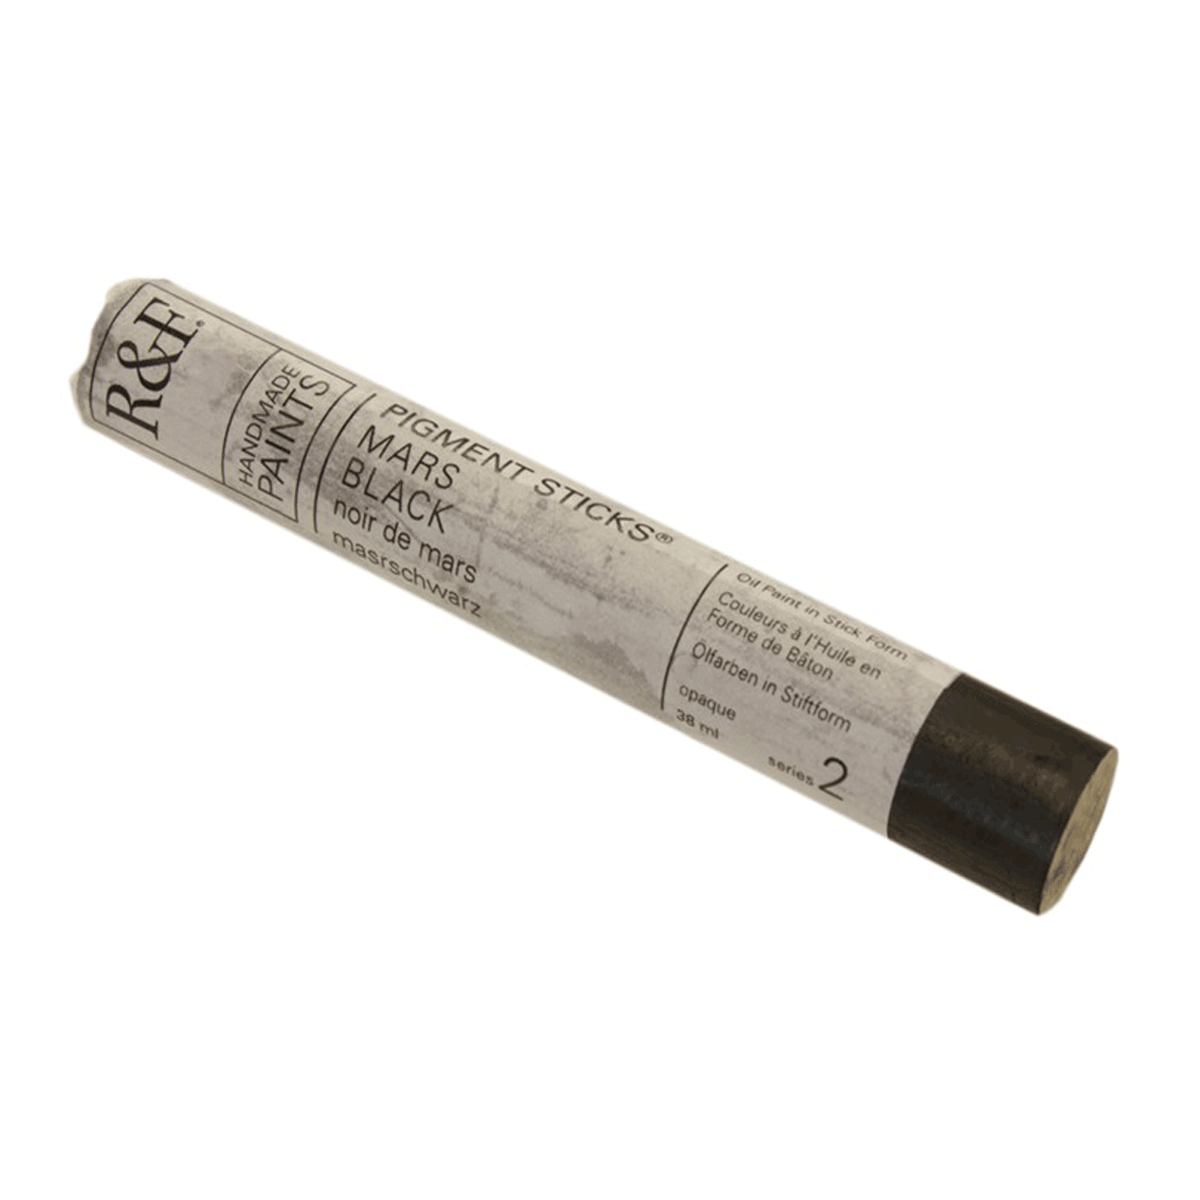 R&F Oil Pigment Stick, Mars Black 38ml